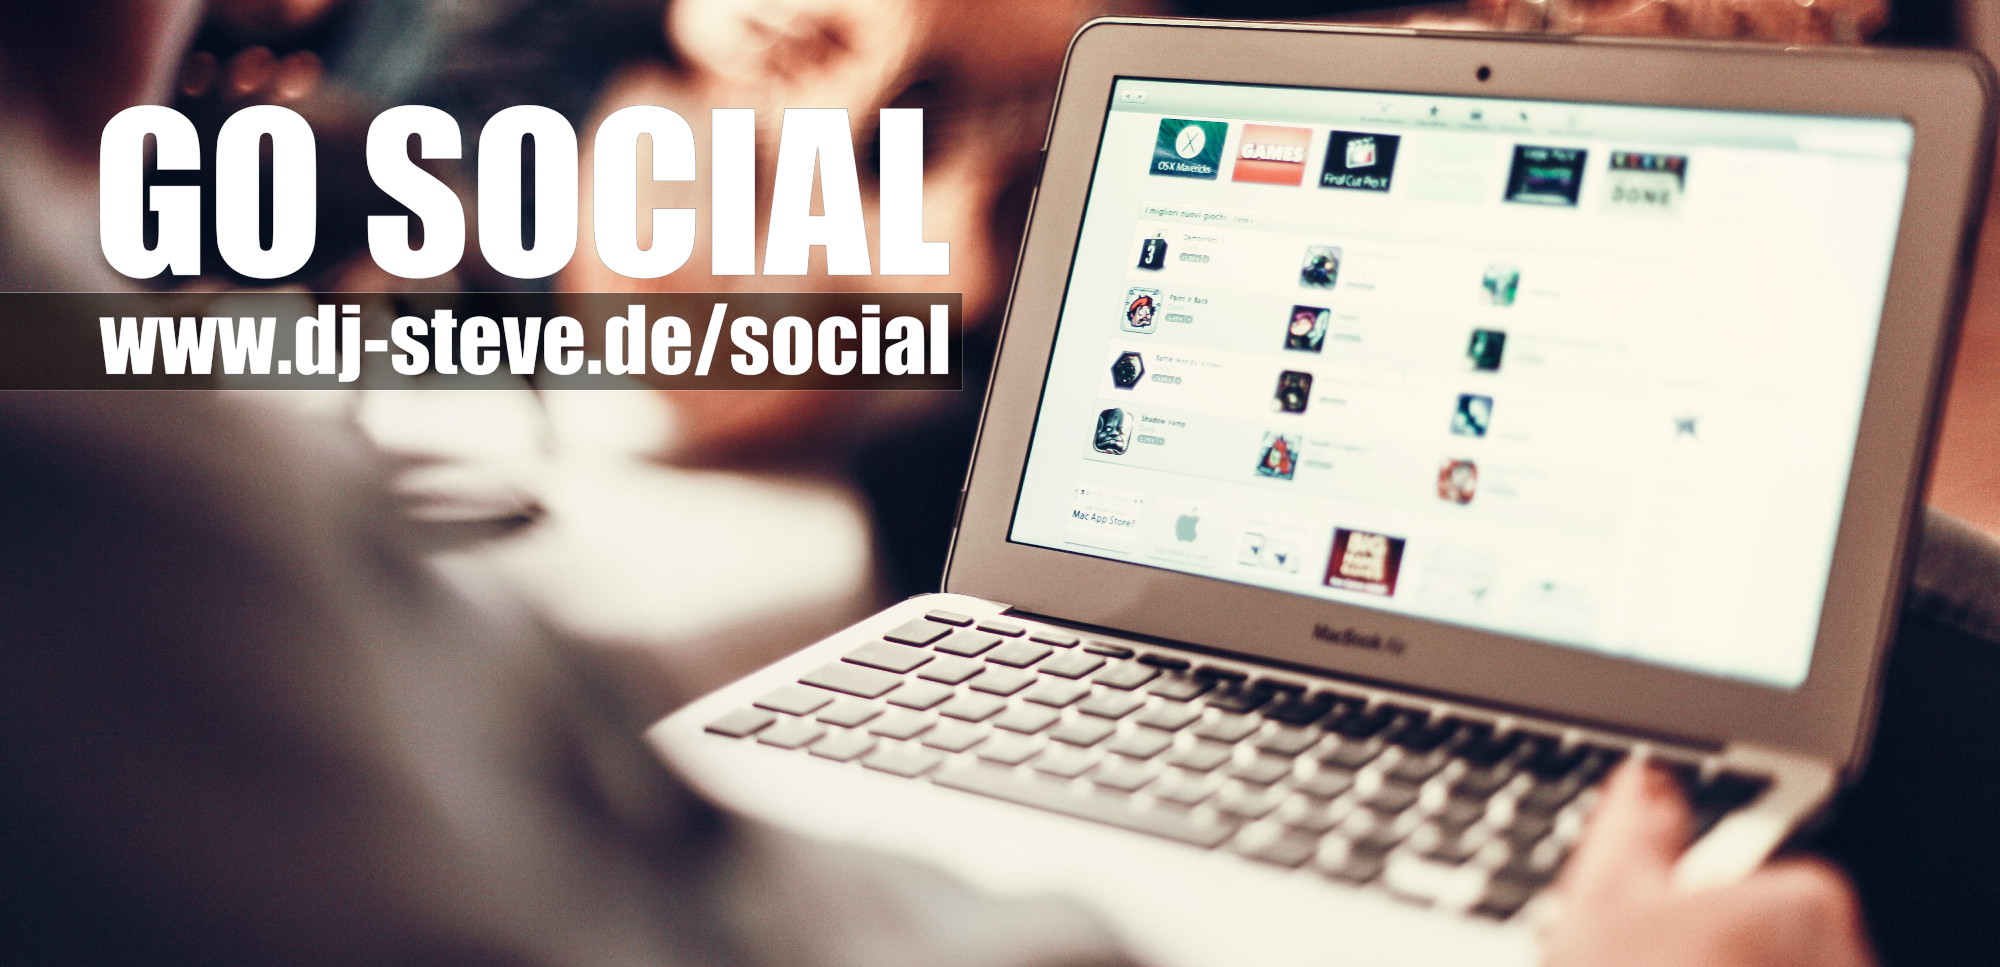 Go Social: Beiträge von Facebook, Twitter und Instagram auch auf dj-steve.de